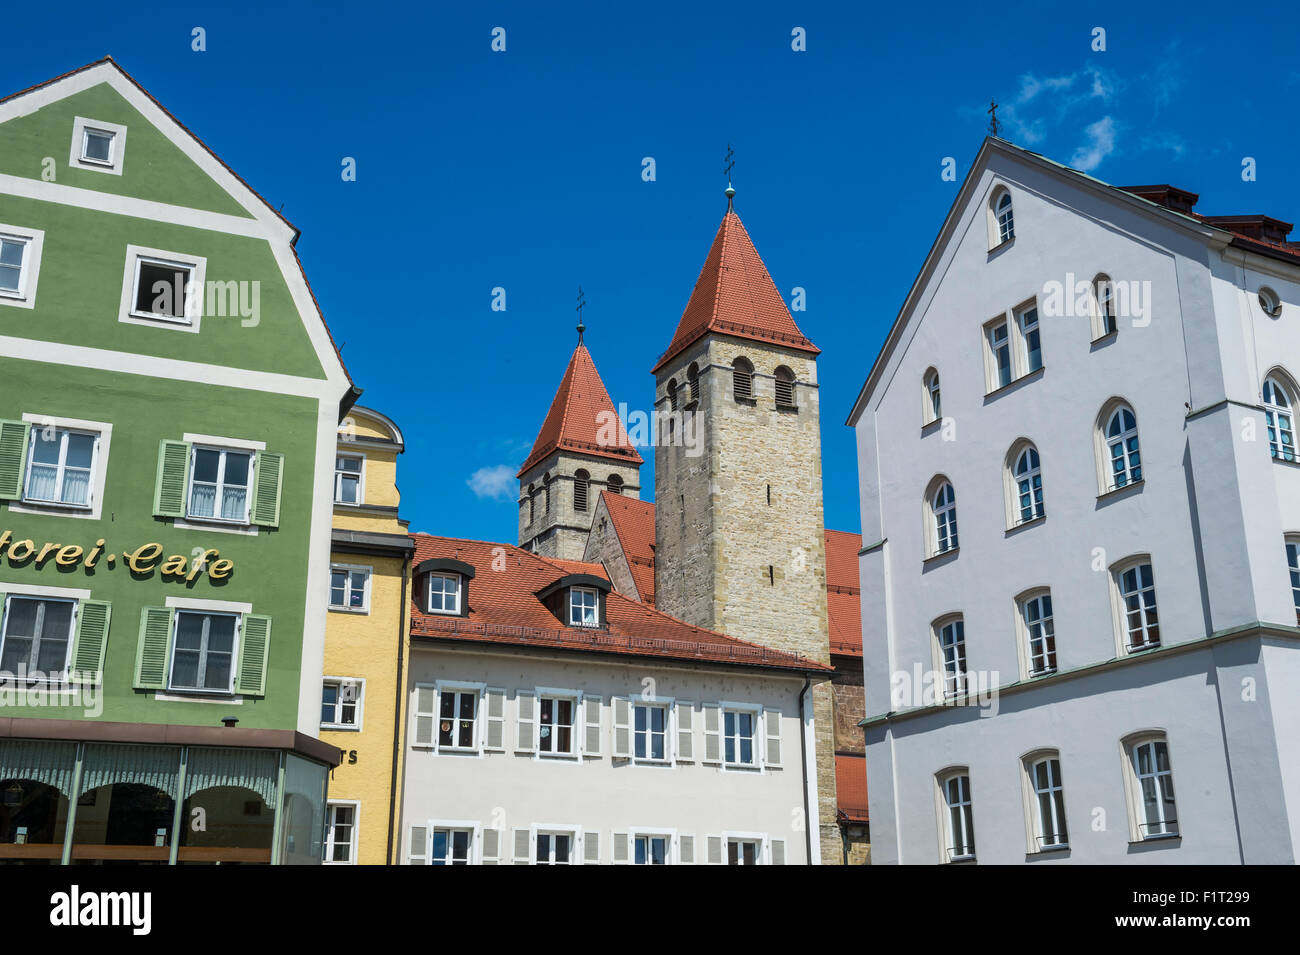 Mittelalterlichen Patrizier Häuser und Türme in Regensburg, UNESCO World Heritage Site, Bayern, Deutschland, Europa Stockfoto